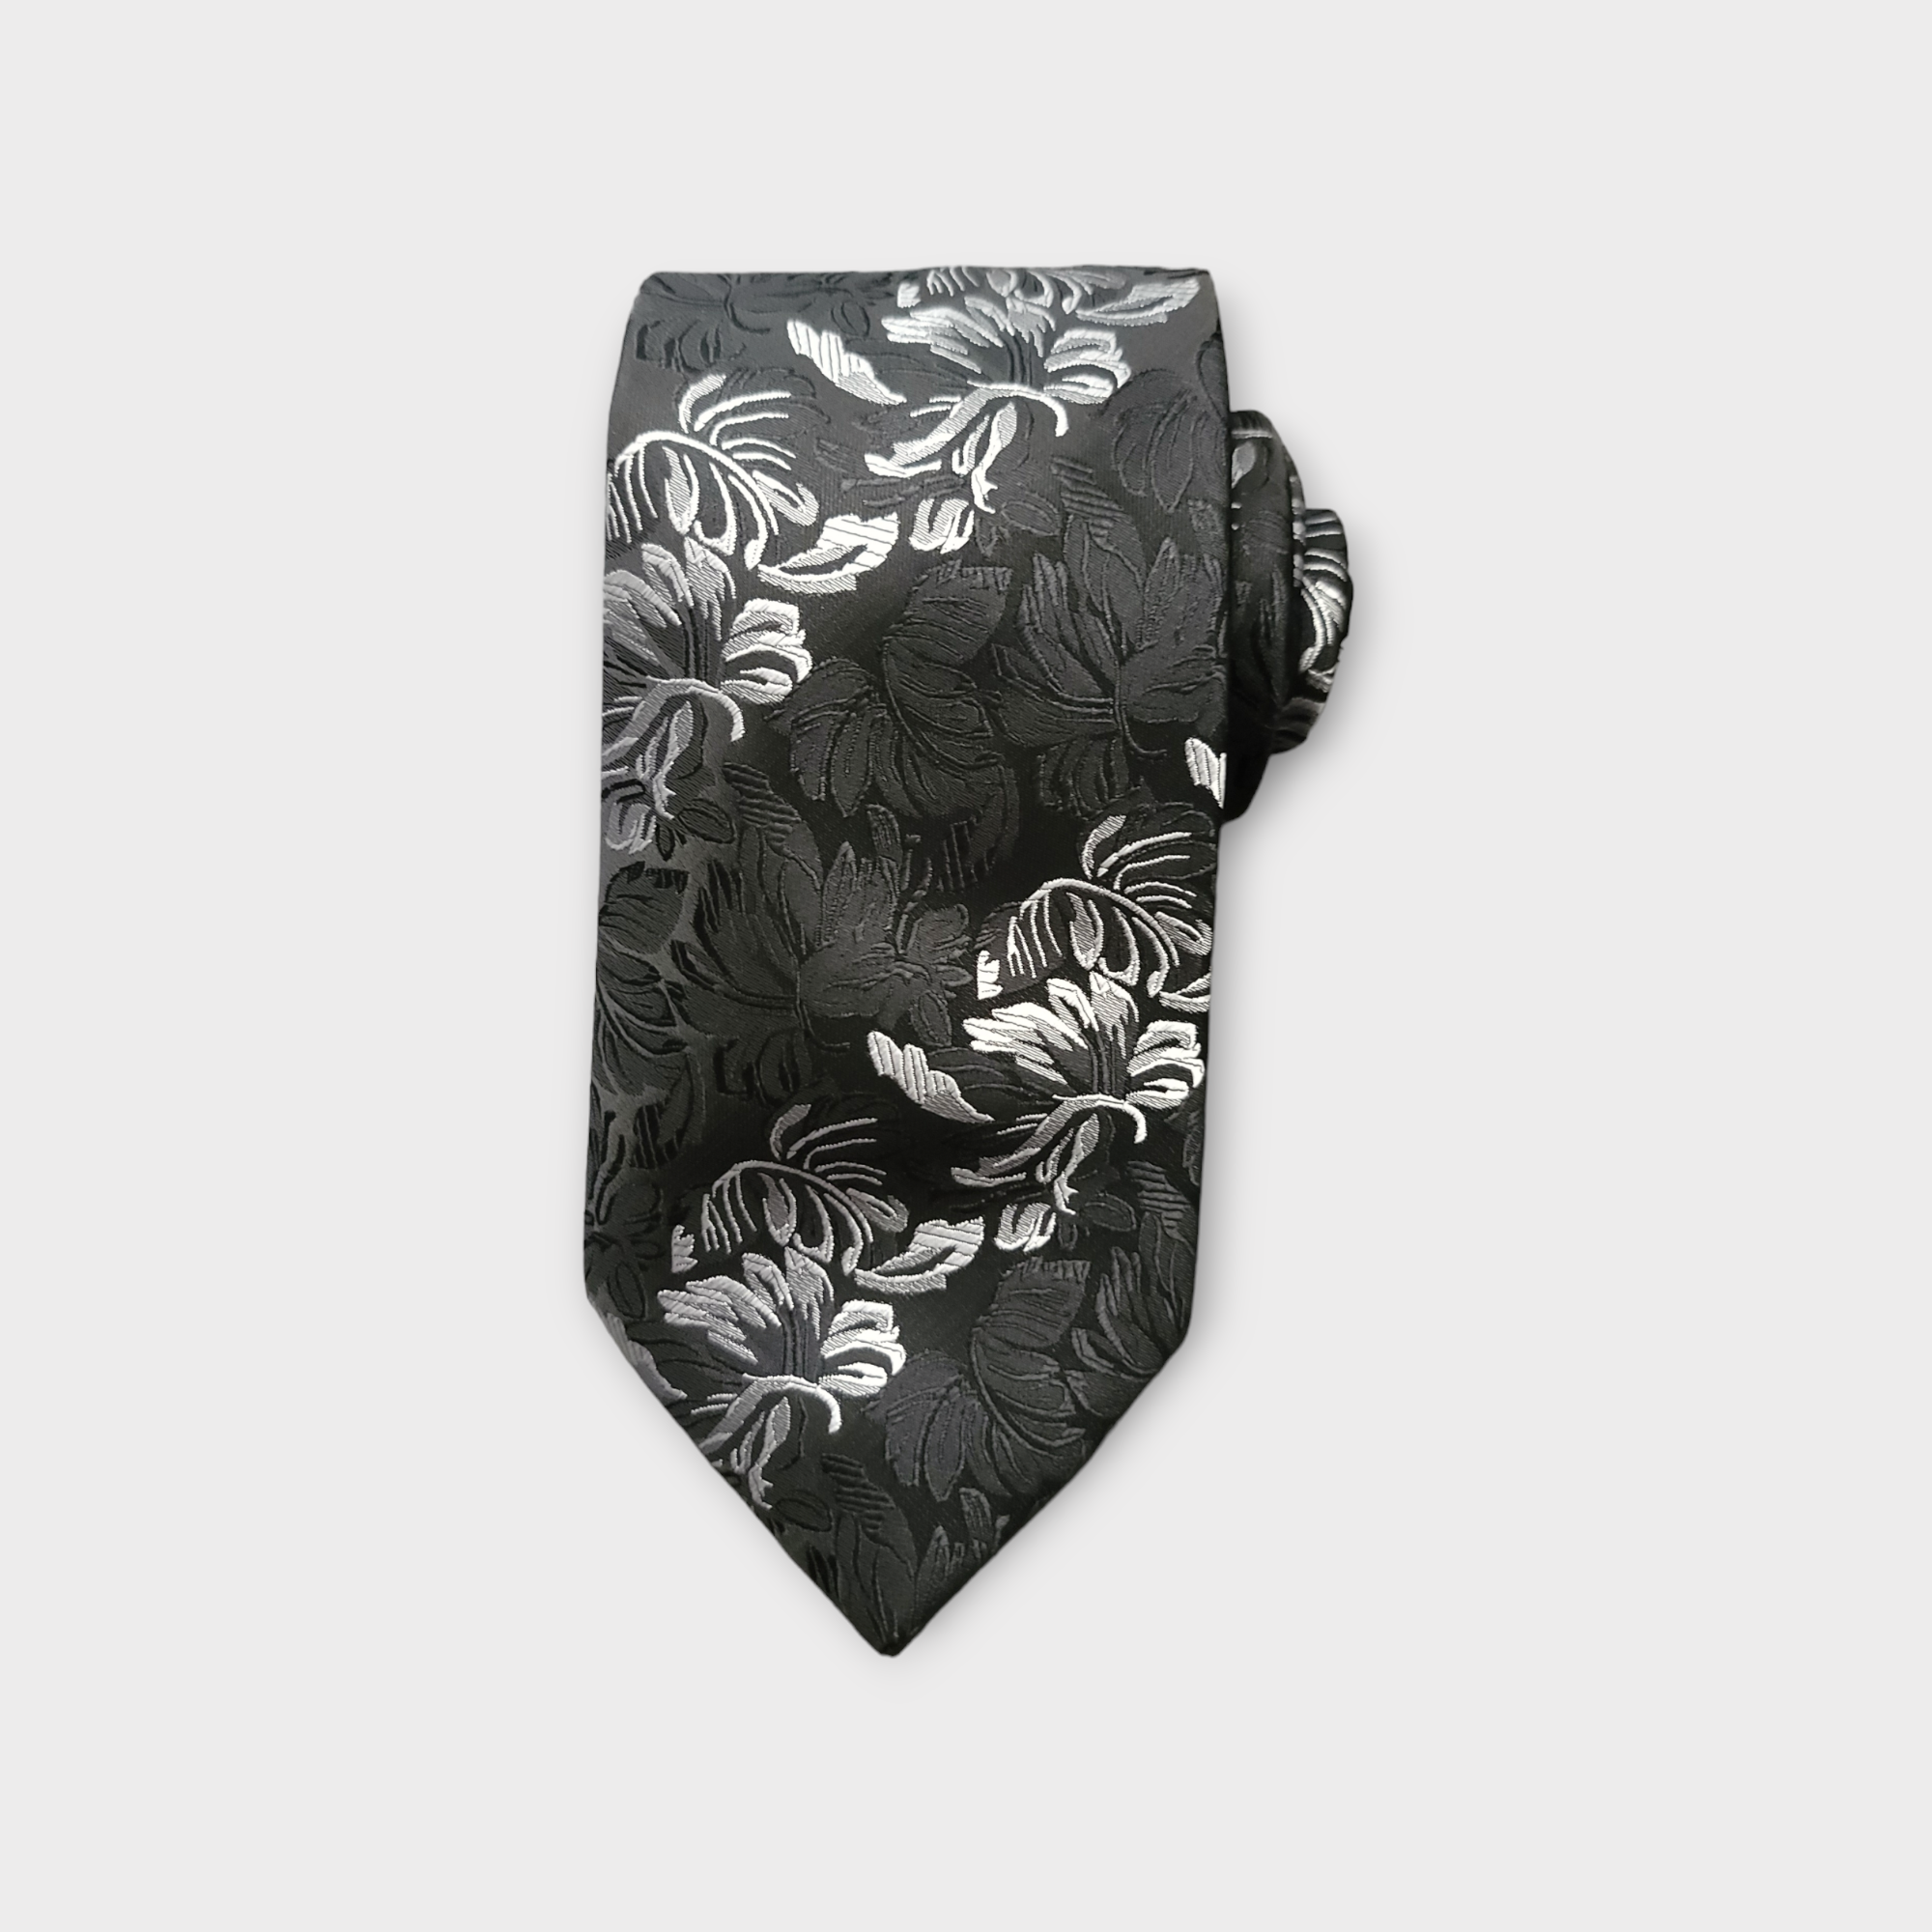 Black White Floral Silk Tie Pocket Square Cufflink Set